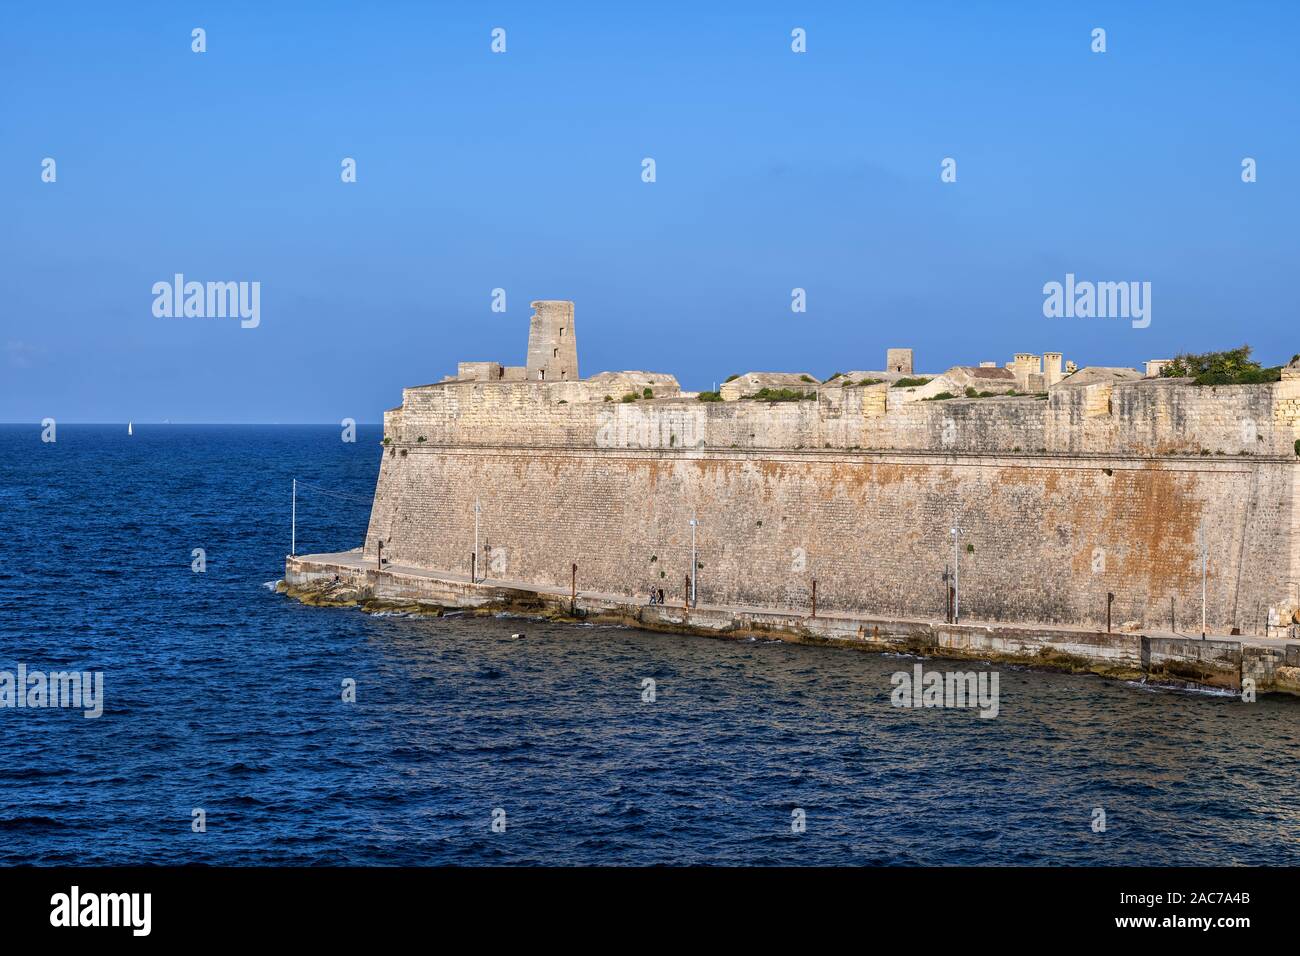 Valletta fortificación defensiva, muro de piedra que rodea la capital de Malta, en el Mar Mediterráneo. Foto de stock